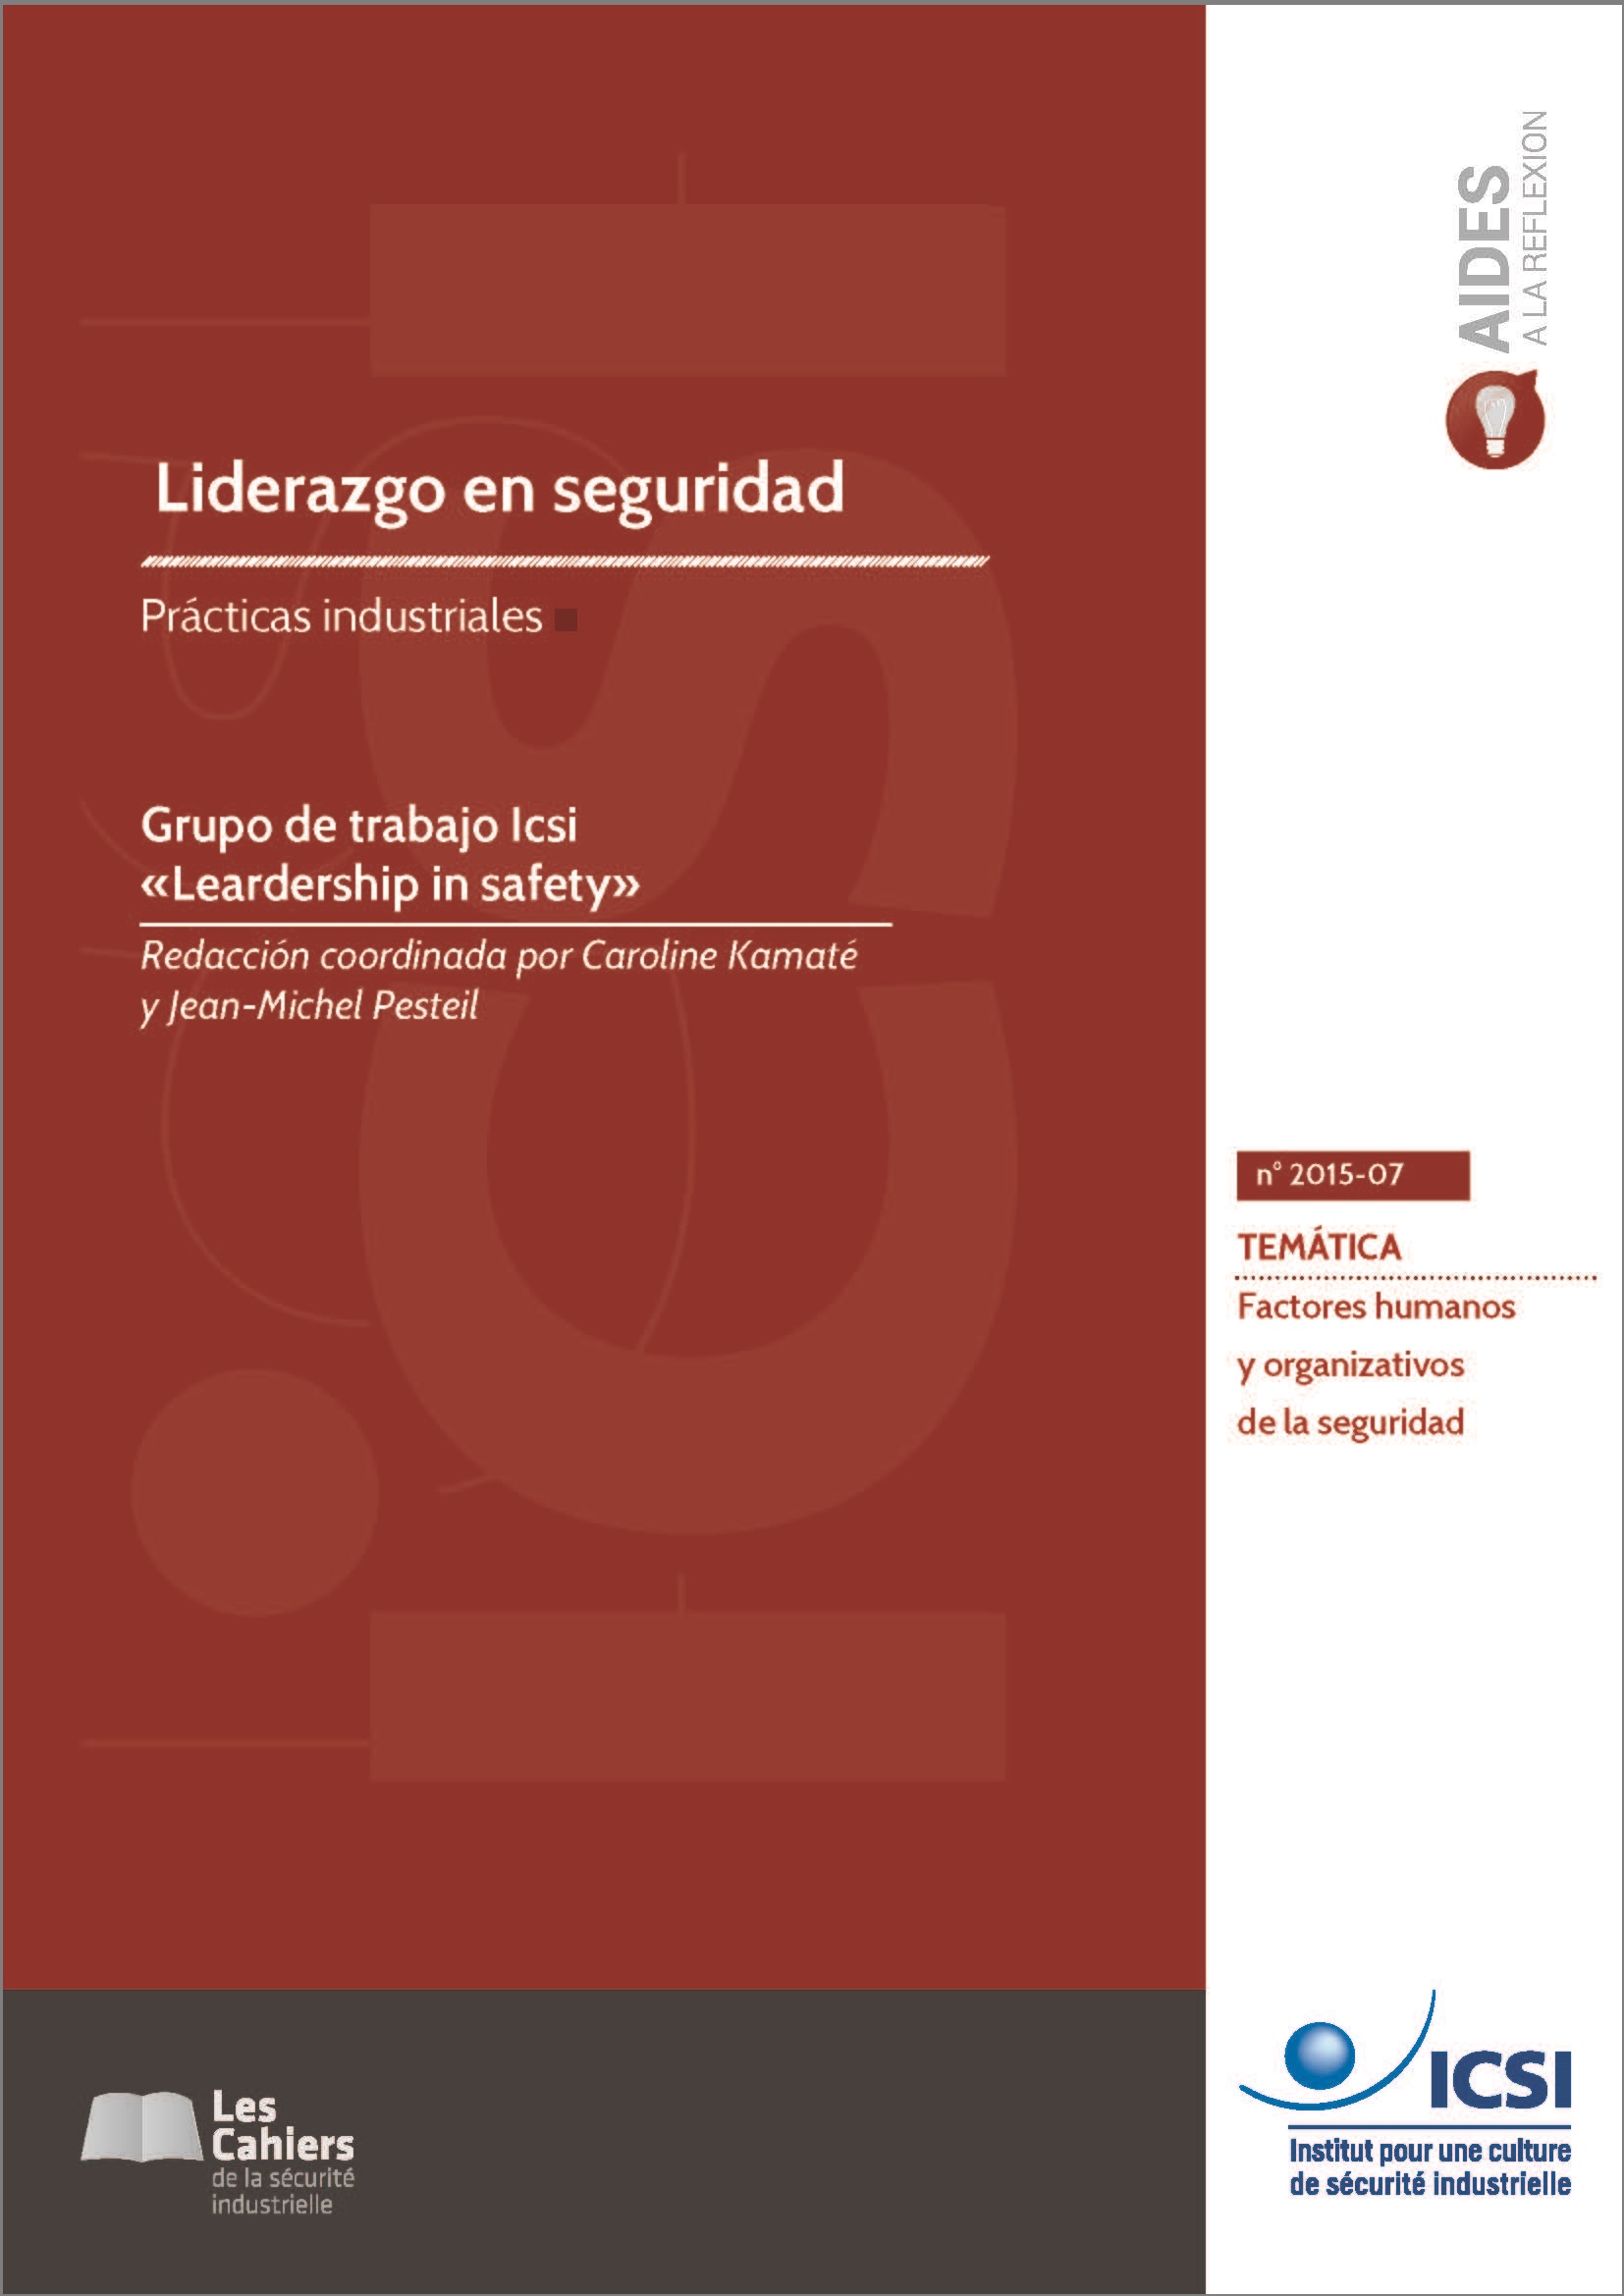 Le Cahier « Leadership » est disponible en espagnol